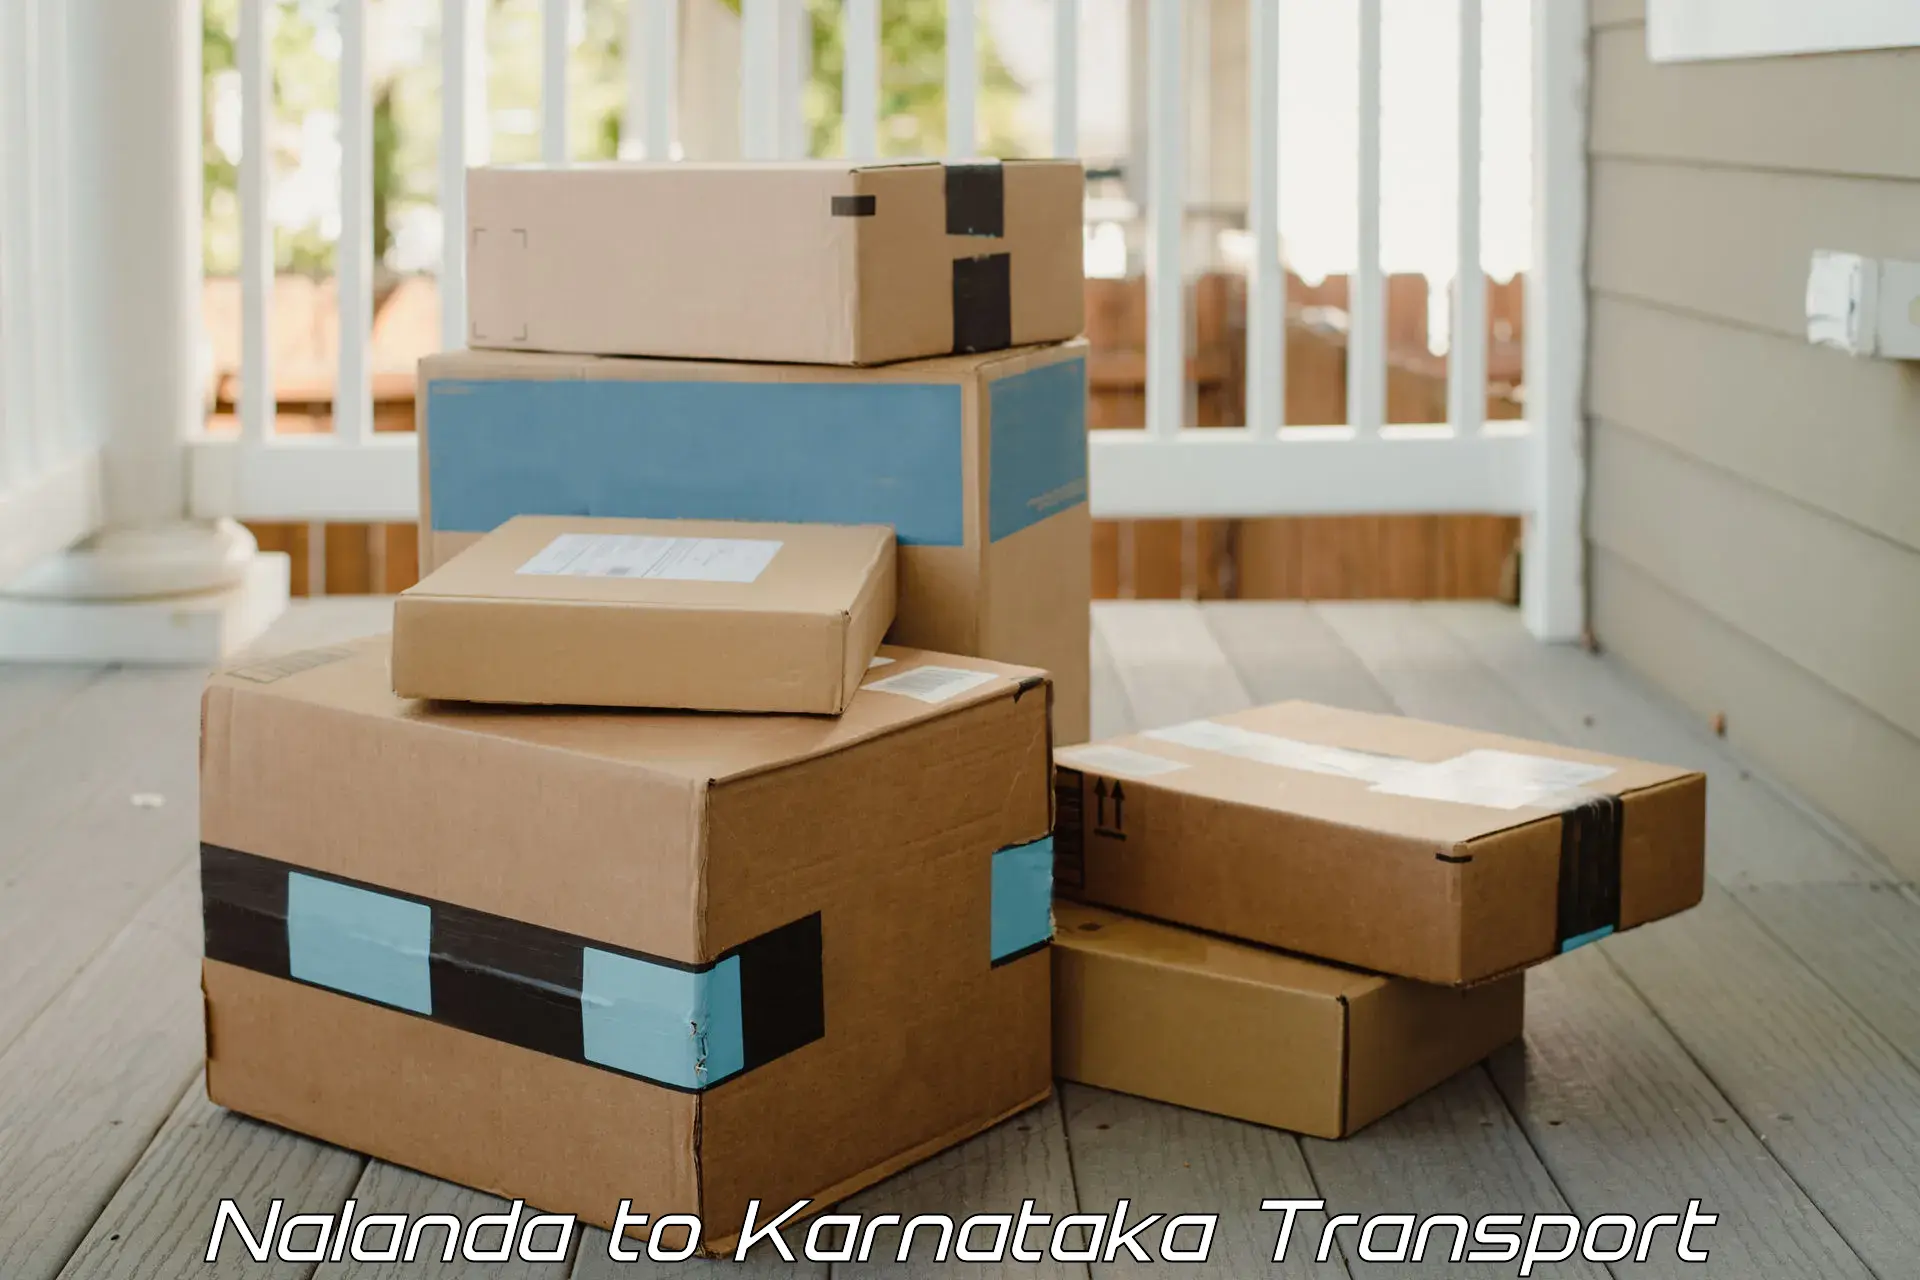 Truck transport companies in India Nalanda to Krishnarajanagara